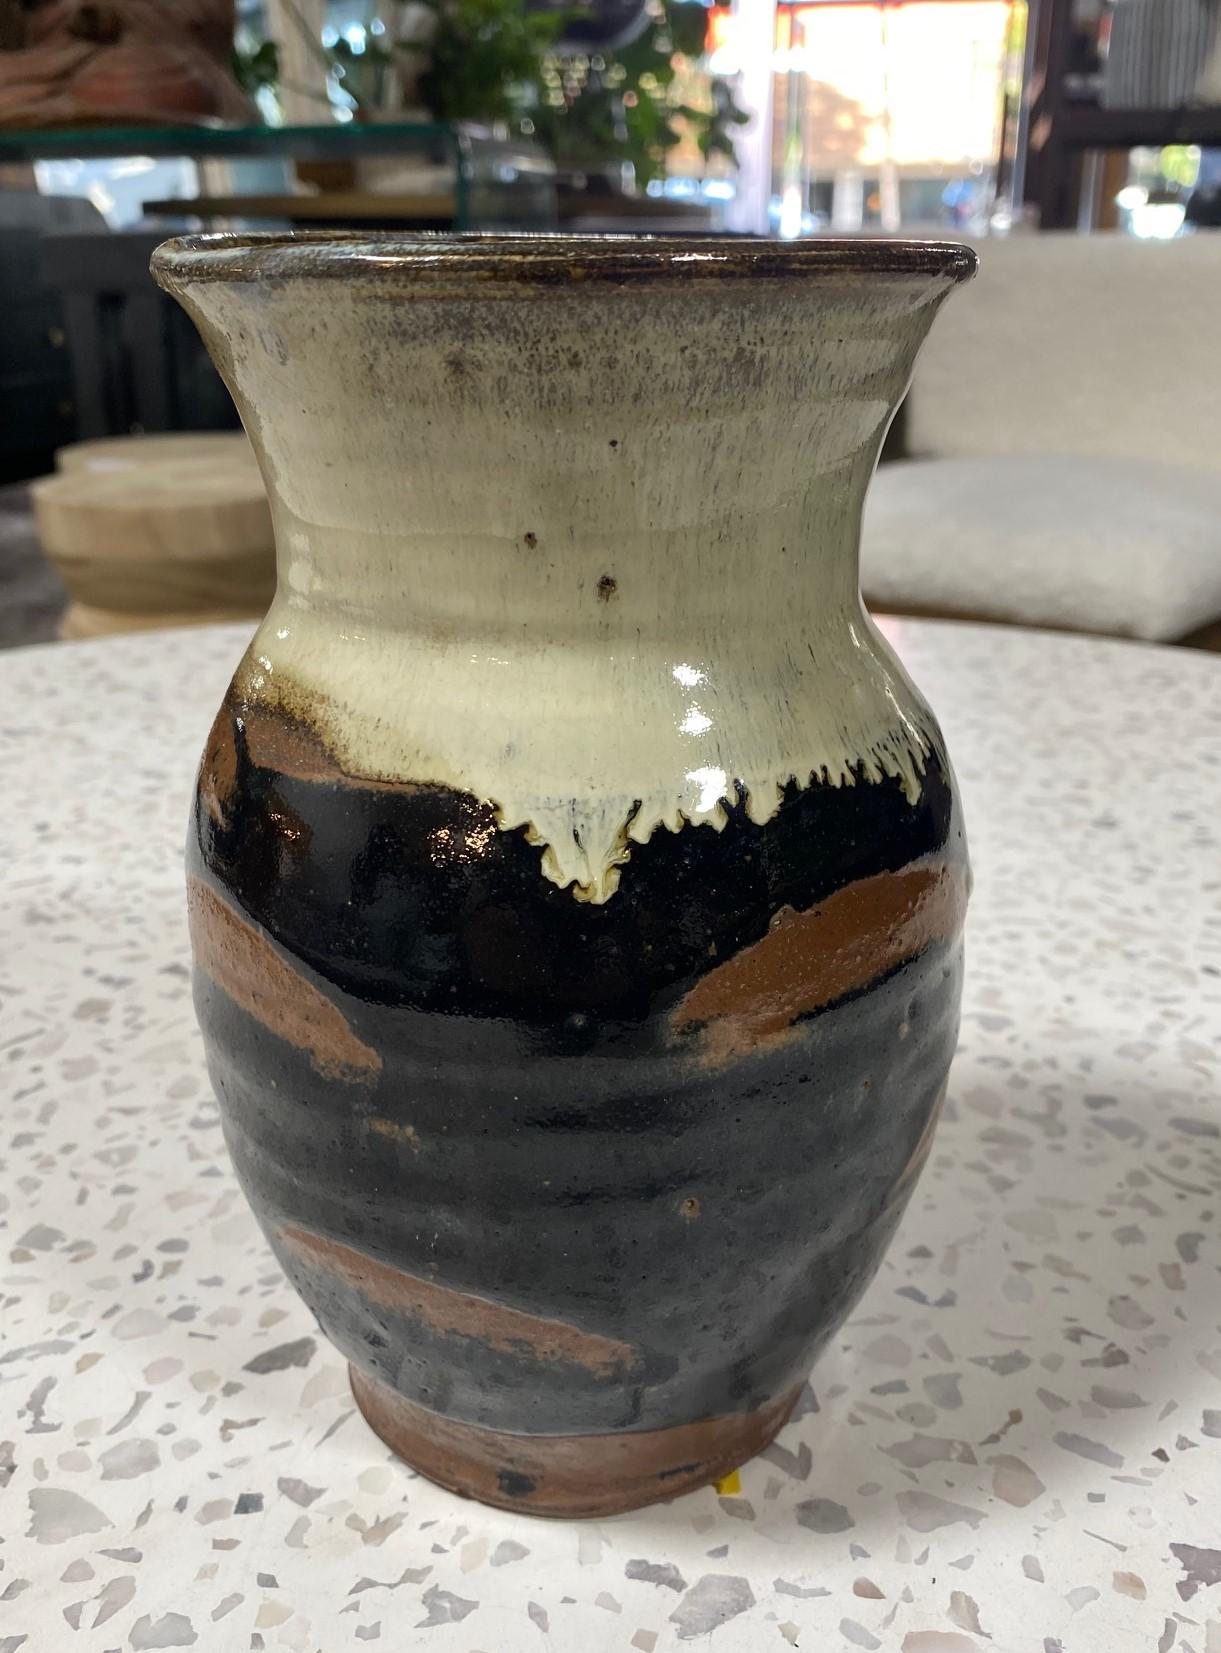 Eine exquisite, wunderschön gearbeitete Vase aus japanischer Mingei-Keramik des Töpfermeisters Shoji Hamada mit Hamadas berühmter, charakteristischer Tenmoku-Glasur mit Kaki-Fingerwischdekor und einer reichhaltigen, tropfenden Nuka-Glasur. Die